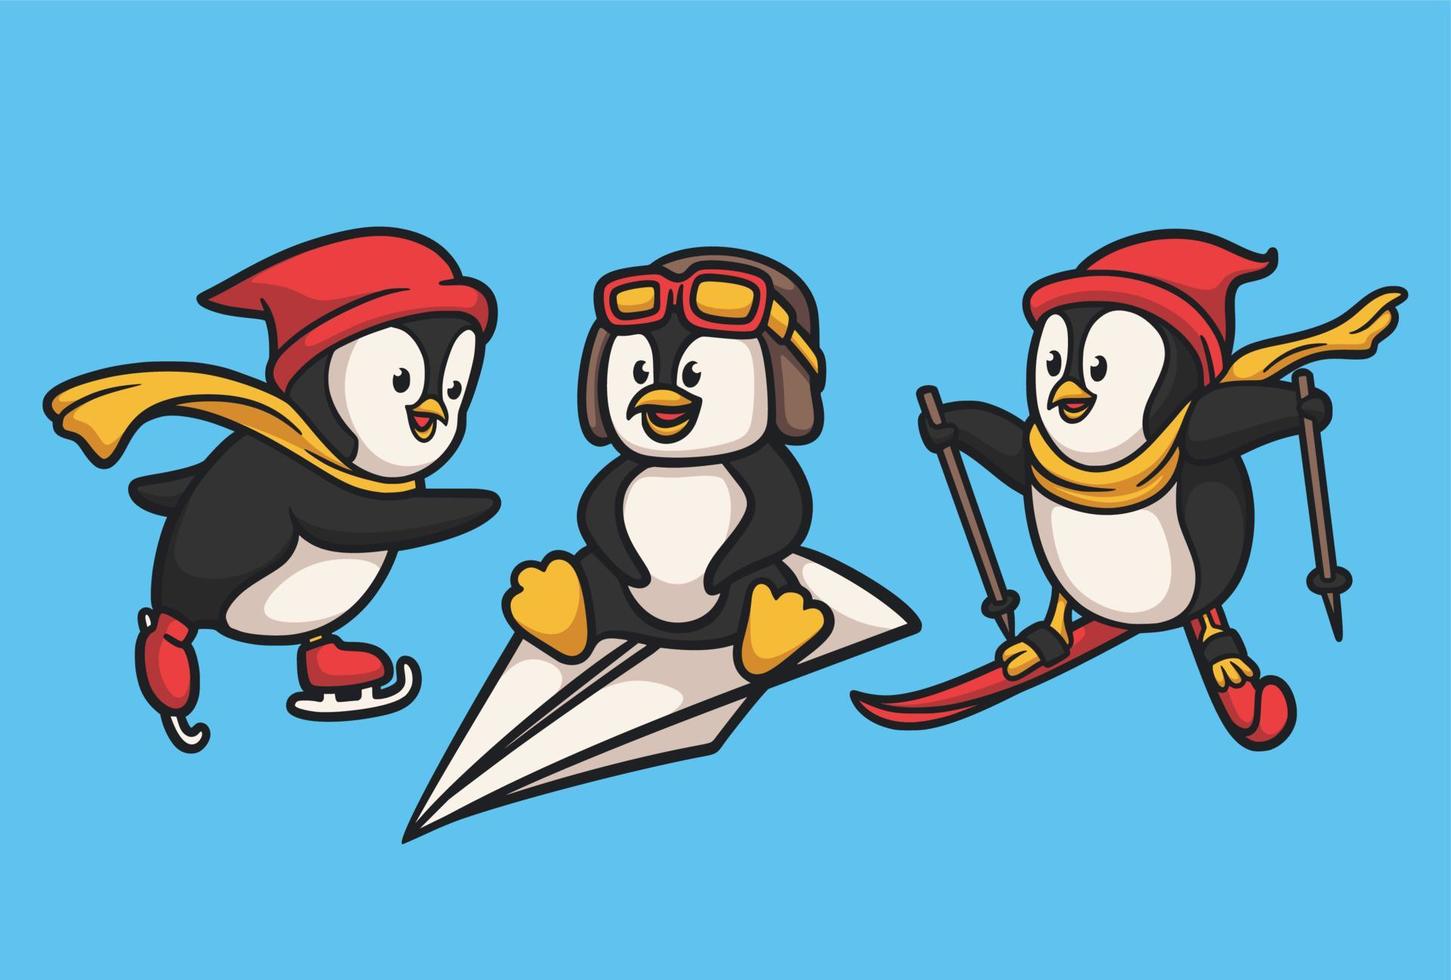 Pinguin ist Snowboarden und Einsteigen in ein Papierflugzeug-Tierlogo-Maskottchen-Illustrationspaket vektor